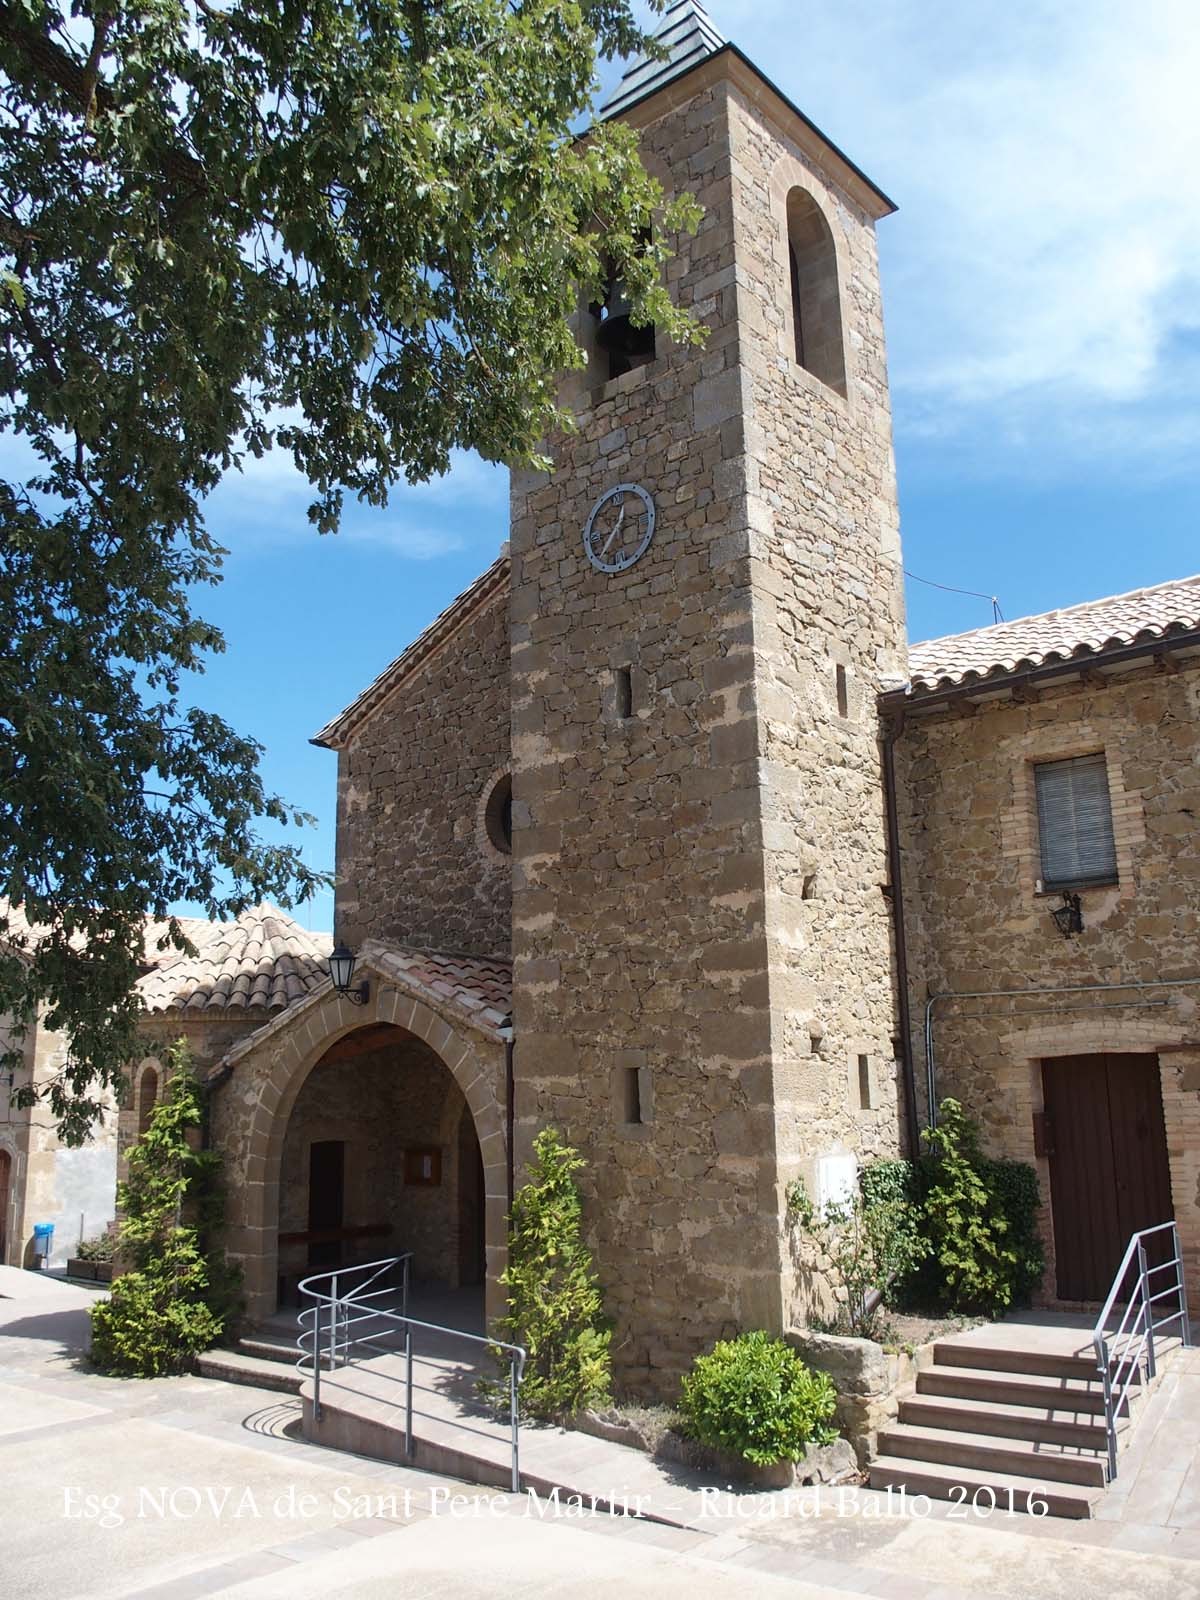 Església NOVA de Sant Pere Màrtir de Peracamps – Llobera